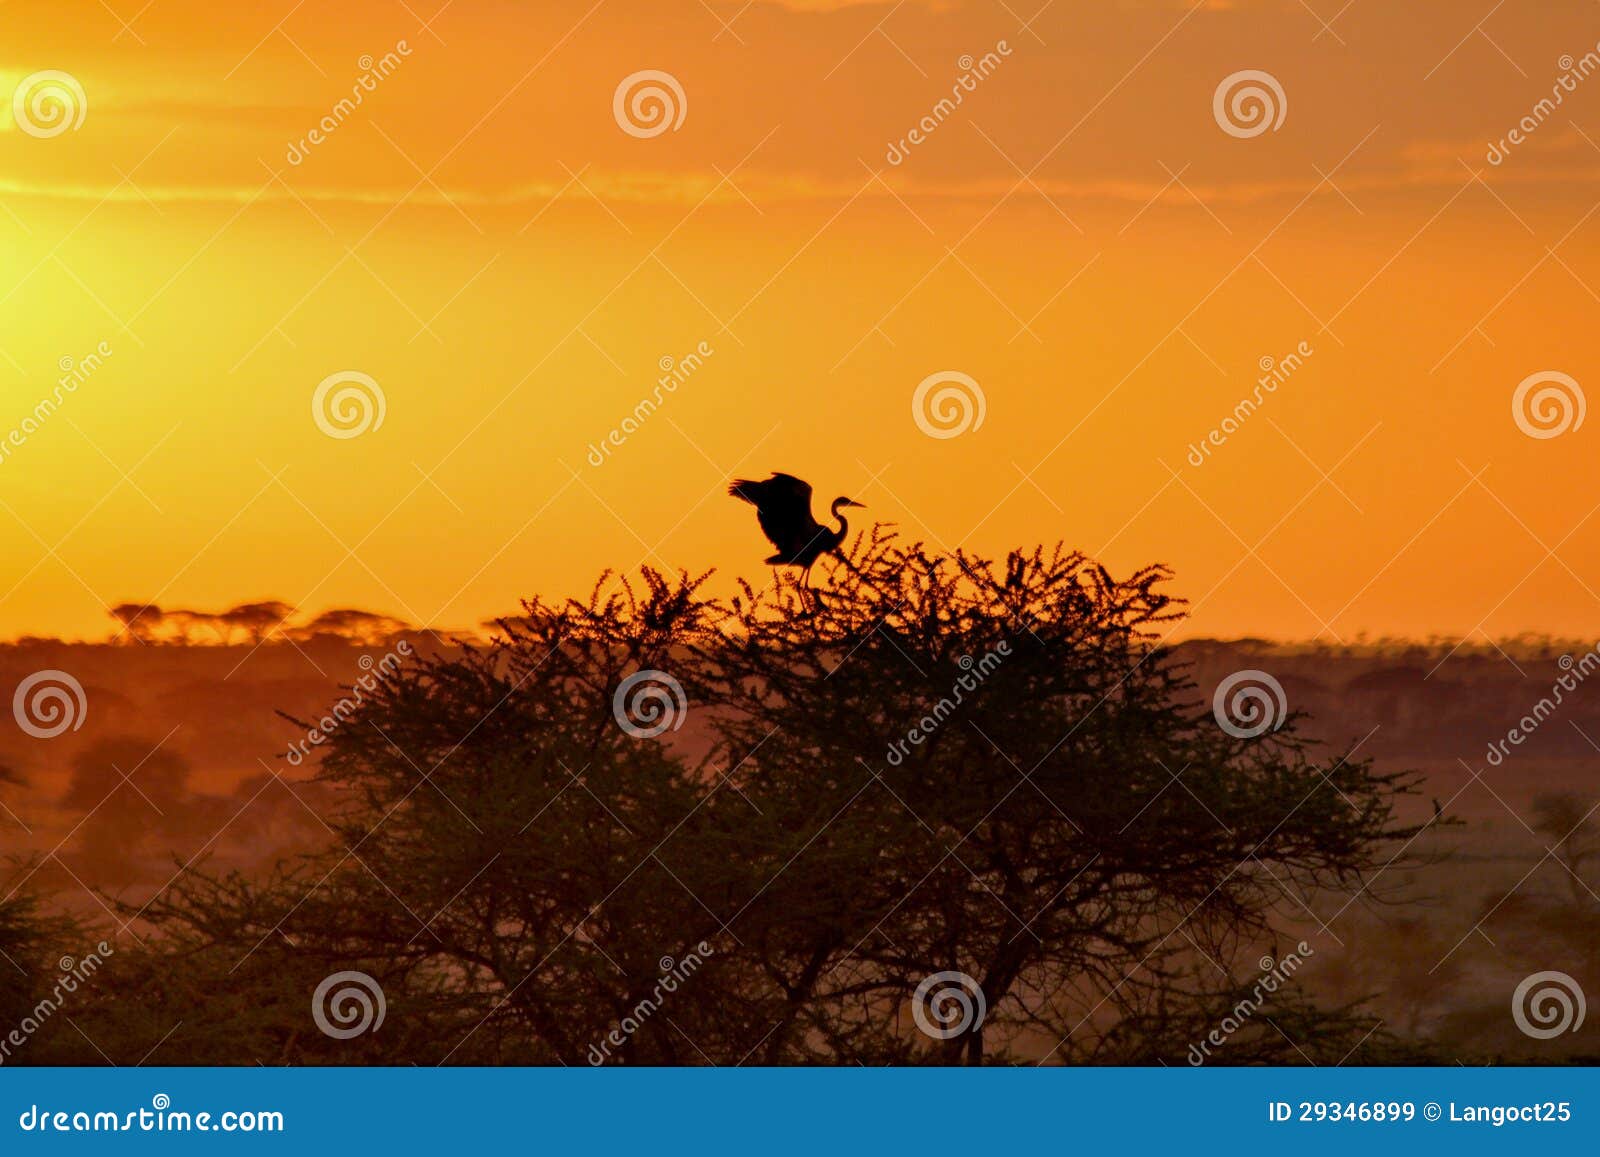 AFRICA SAFARI SUNRISE stock image. Image of desert, summer - 29346899